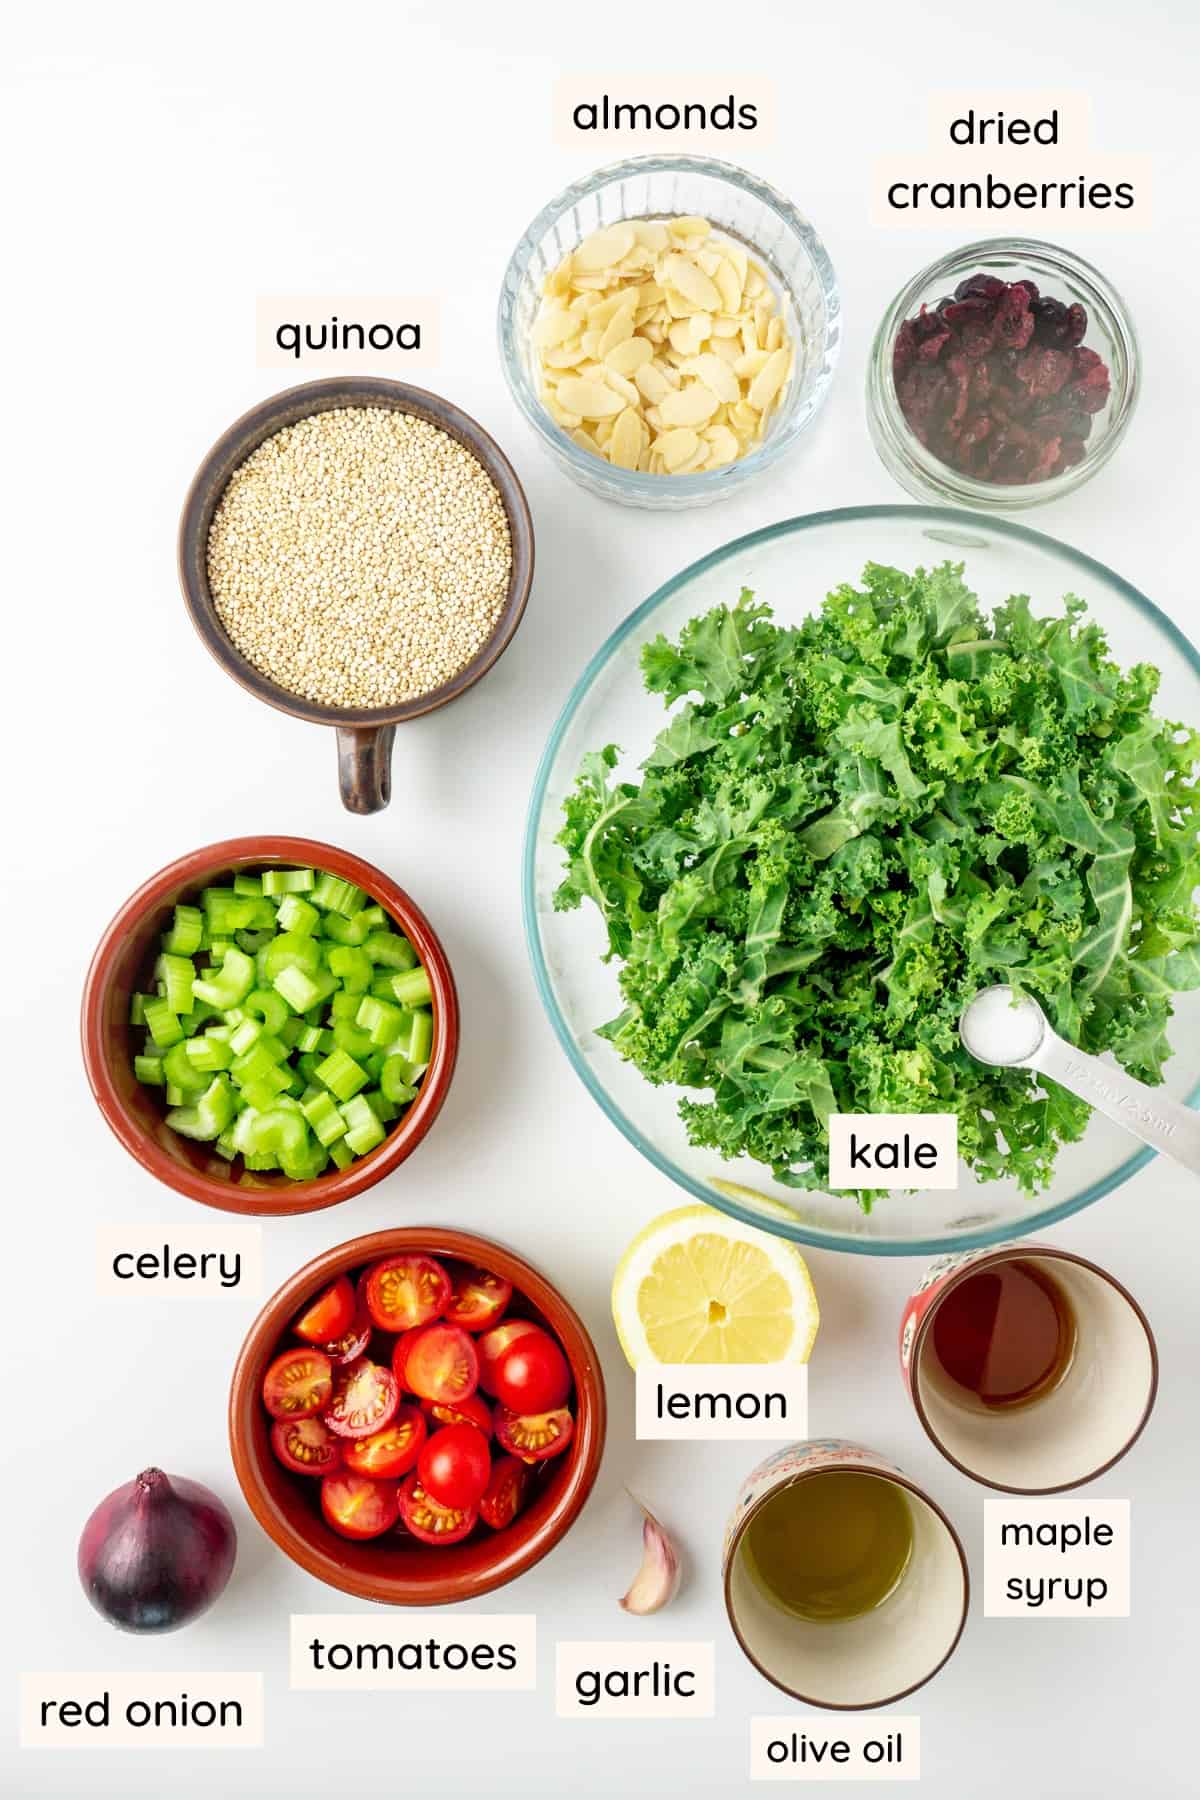 Υλικά για λάχανο και σαλάτα κινόα: λάχανο ψιλοκομμένο, κινόα, κόκκινο κρεμμύδι, αμύγδαλα σε νιφάδες, σέλινο, ντοματίνια, αποξηραμένα κράνμπερι, ελαιόλαδο, λεμόνι, σιρόπι σφενδάμου, σκόρδο, αλάτι.